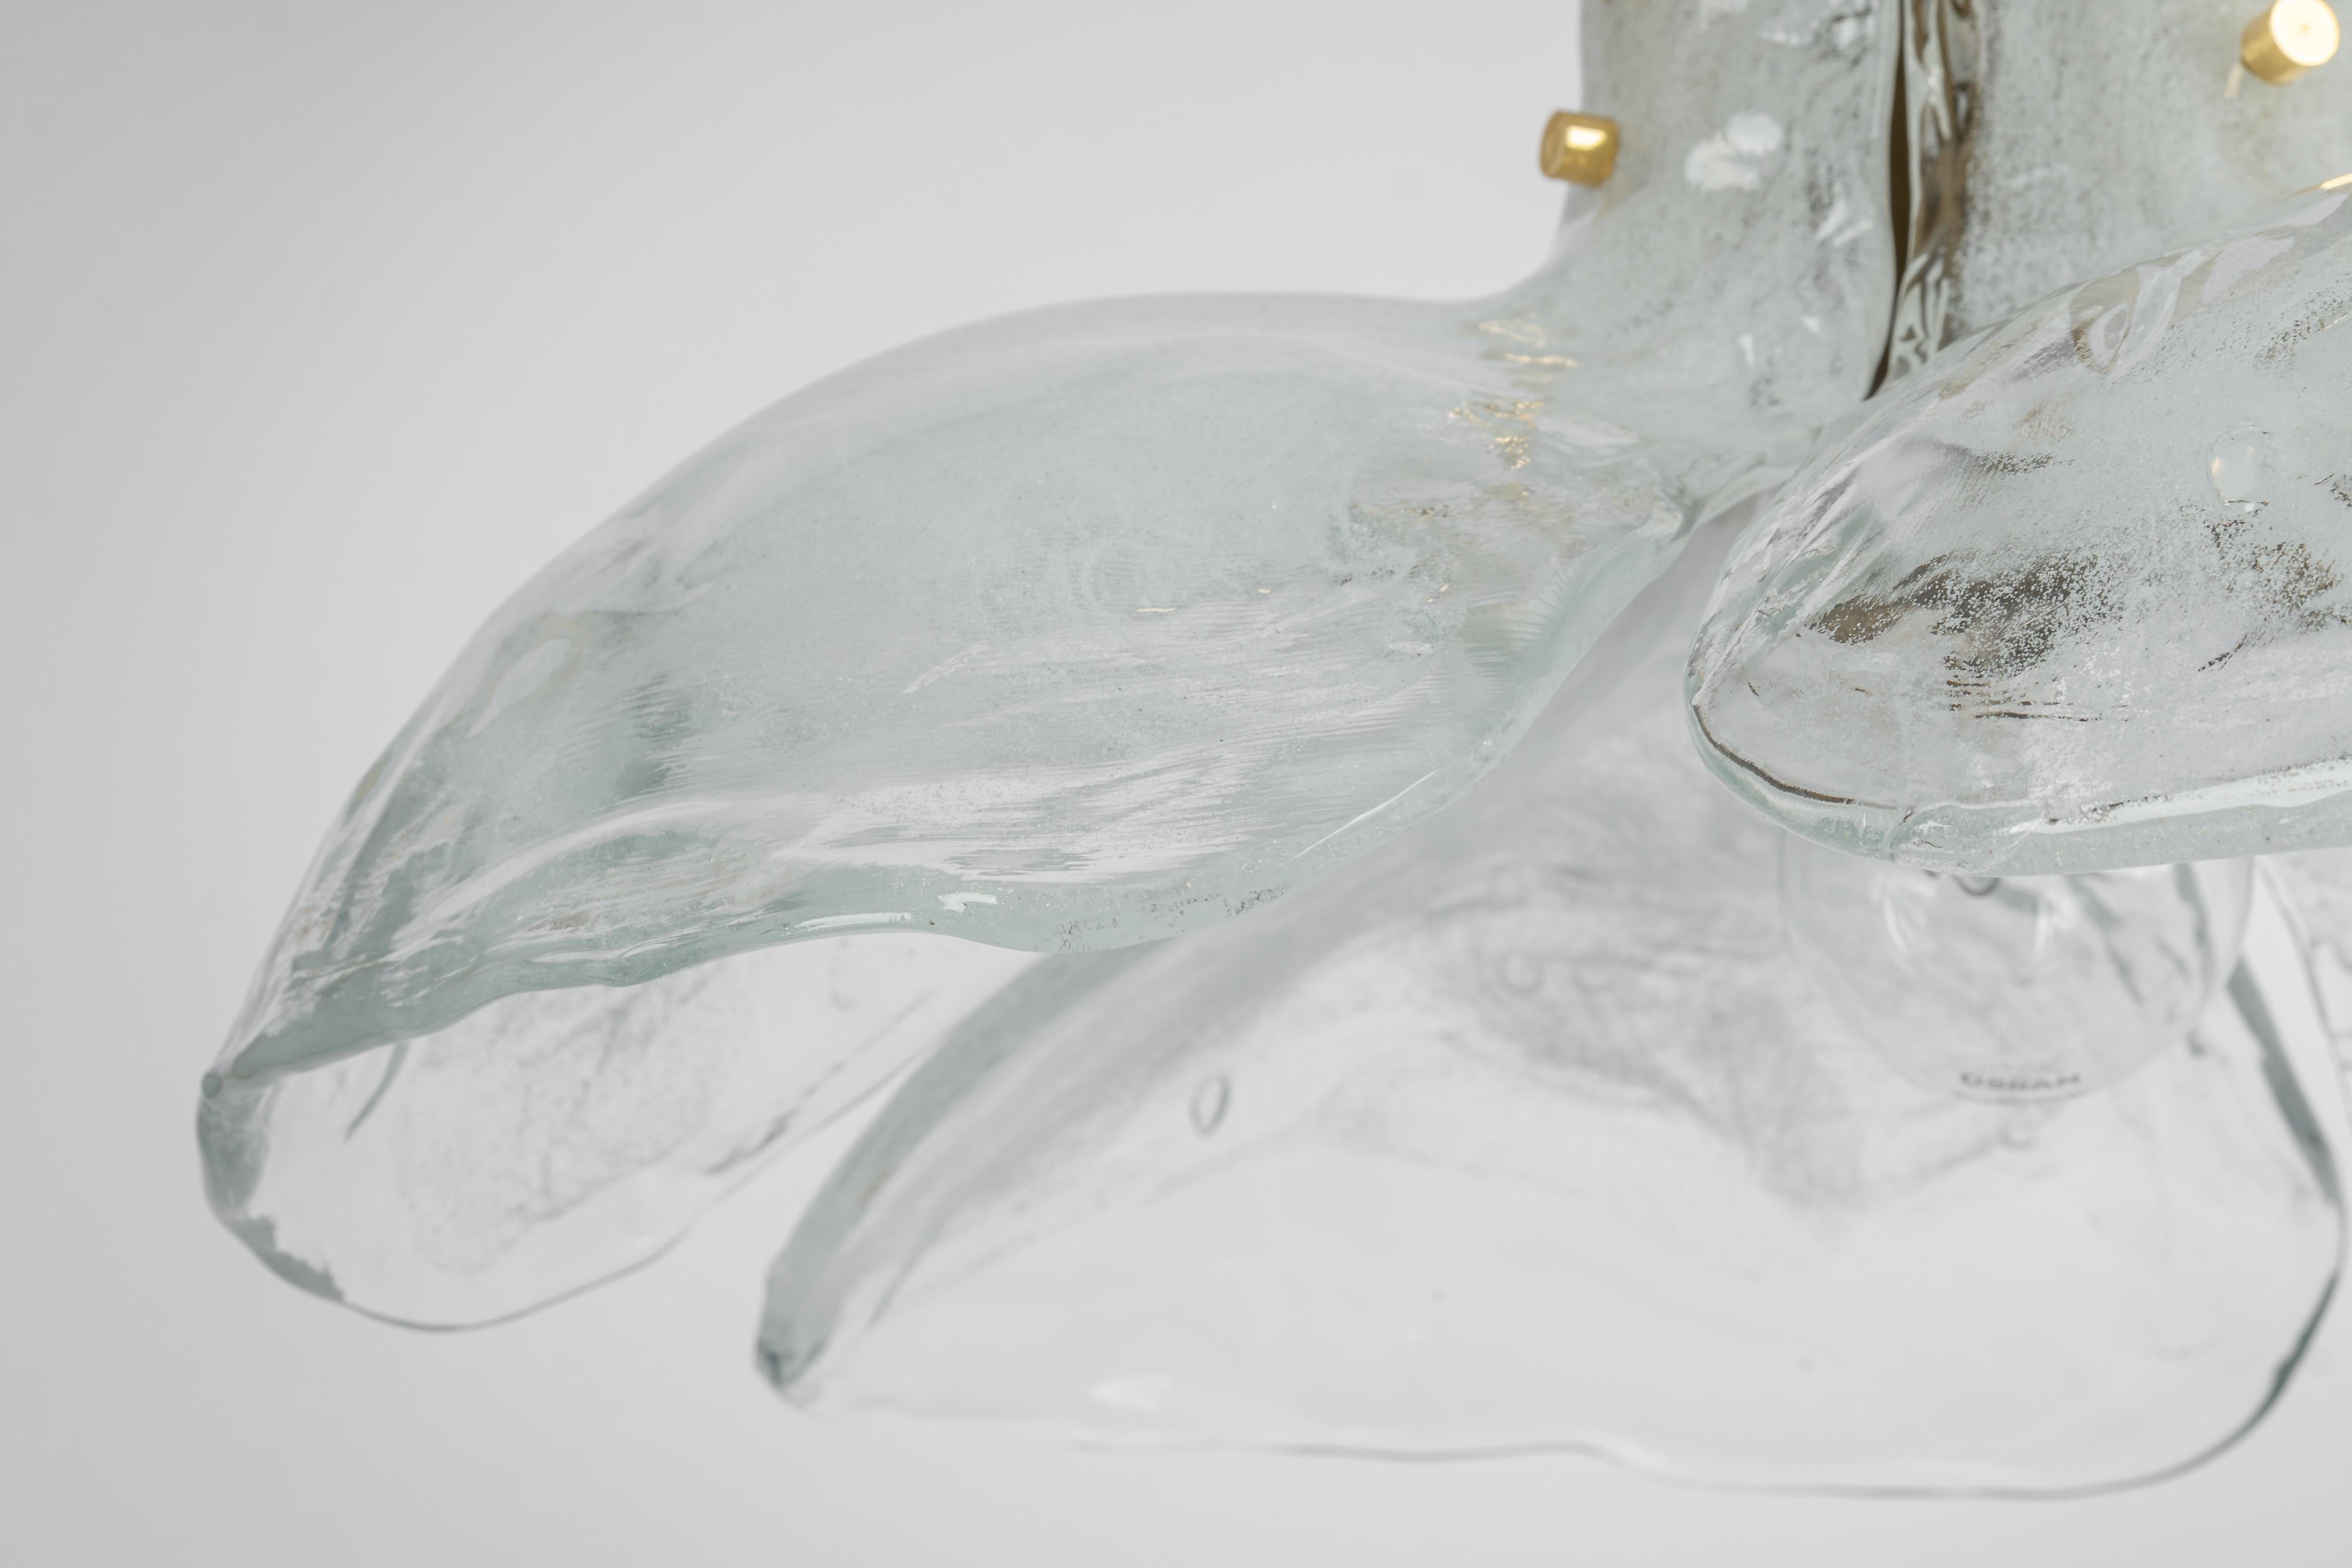 Ein atemberaubender Kronleuchter aus weißem Murano-Klarglas, entworfen von Kalmar, Österreich, hergestellt in den 1960er Jahren.
Der Kronleuchter besteht aus 4 dicken Murano-Glaselementen, die an einem Messingrahmen befestigt sind.

Hochwertig und